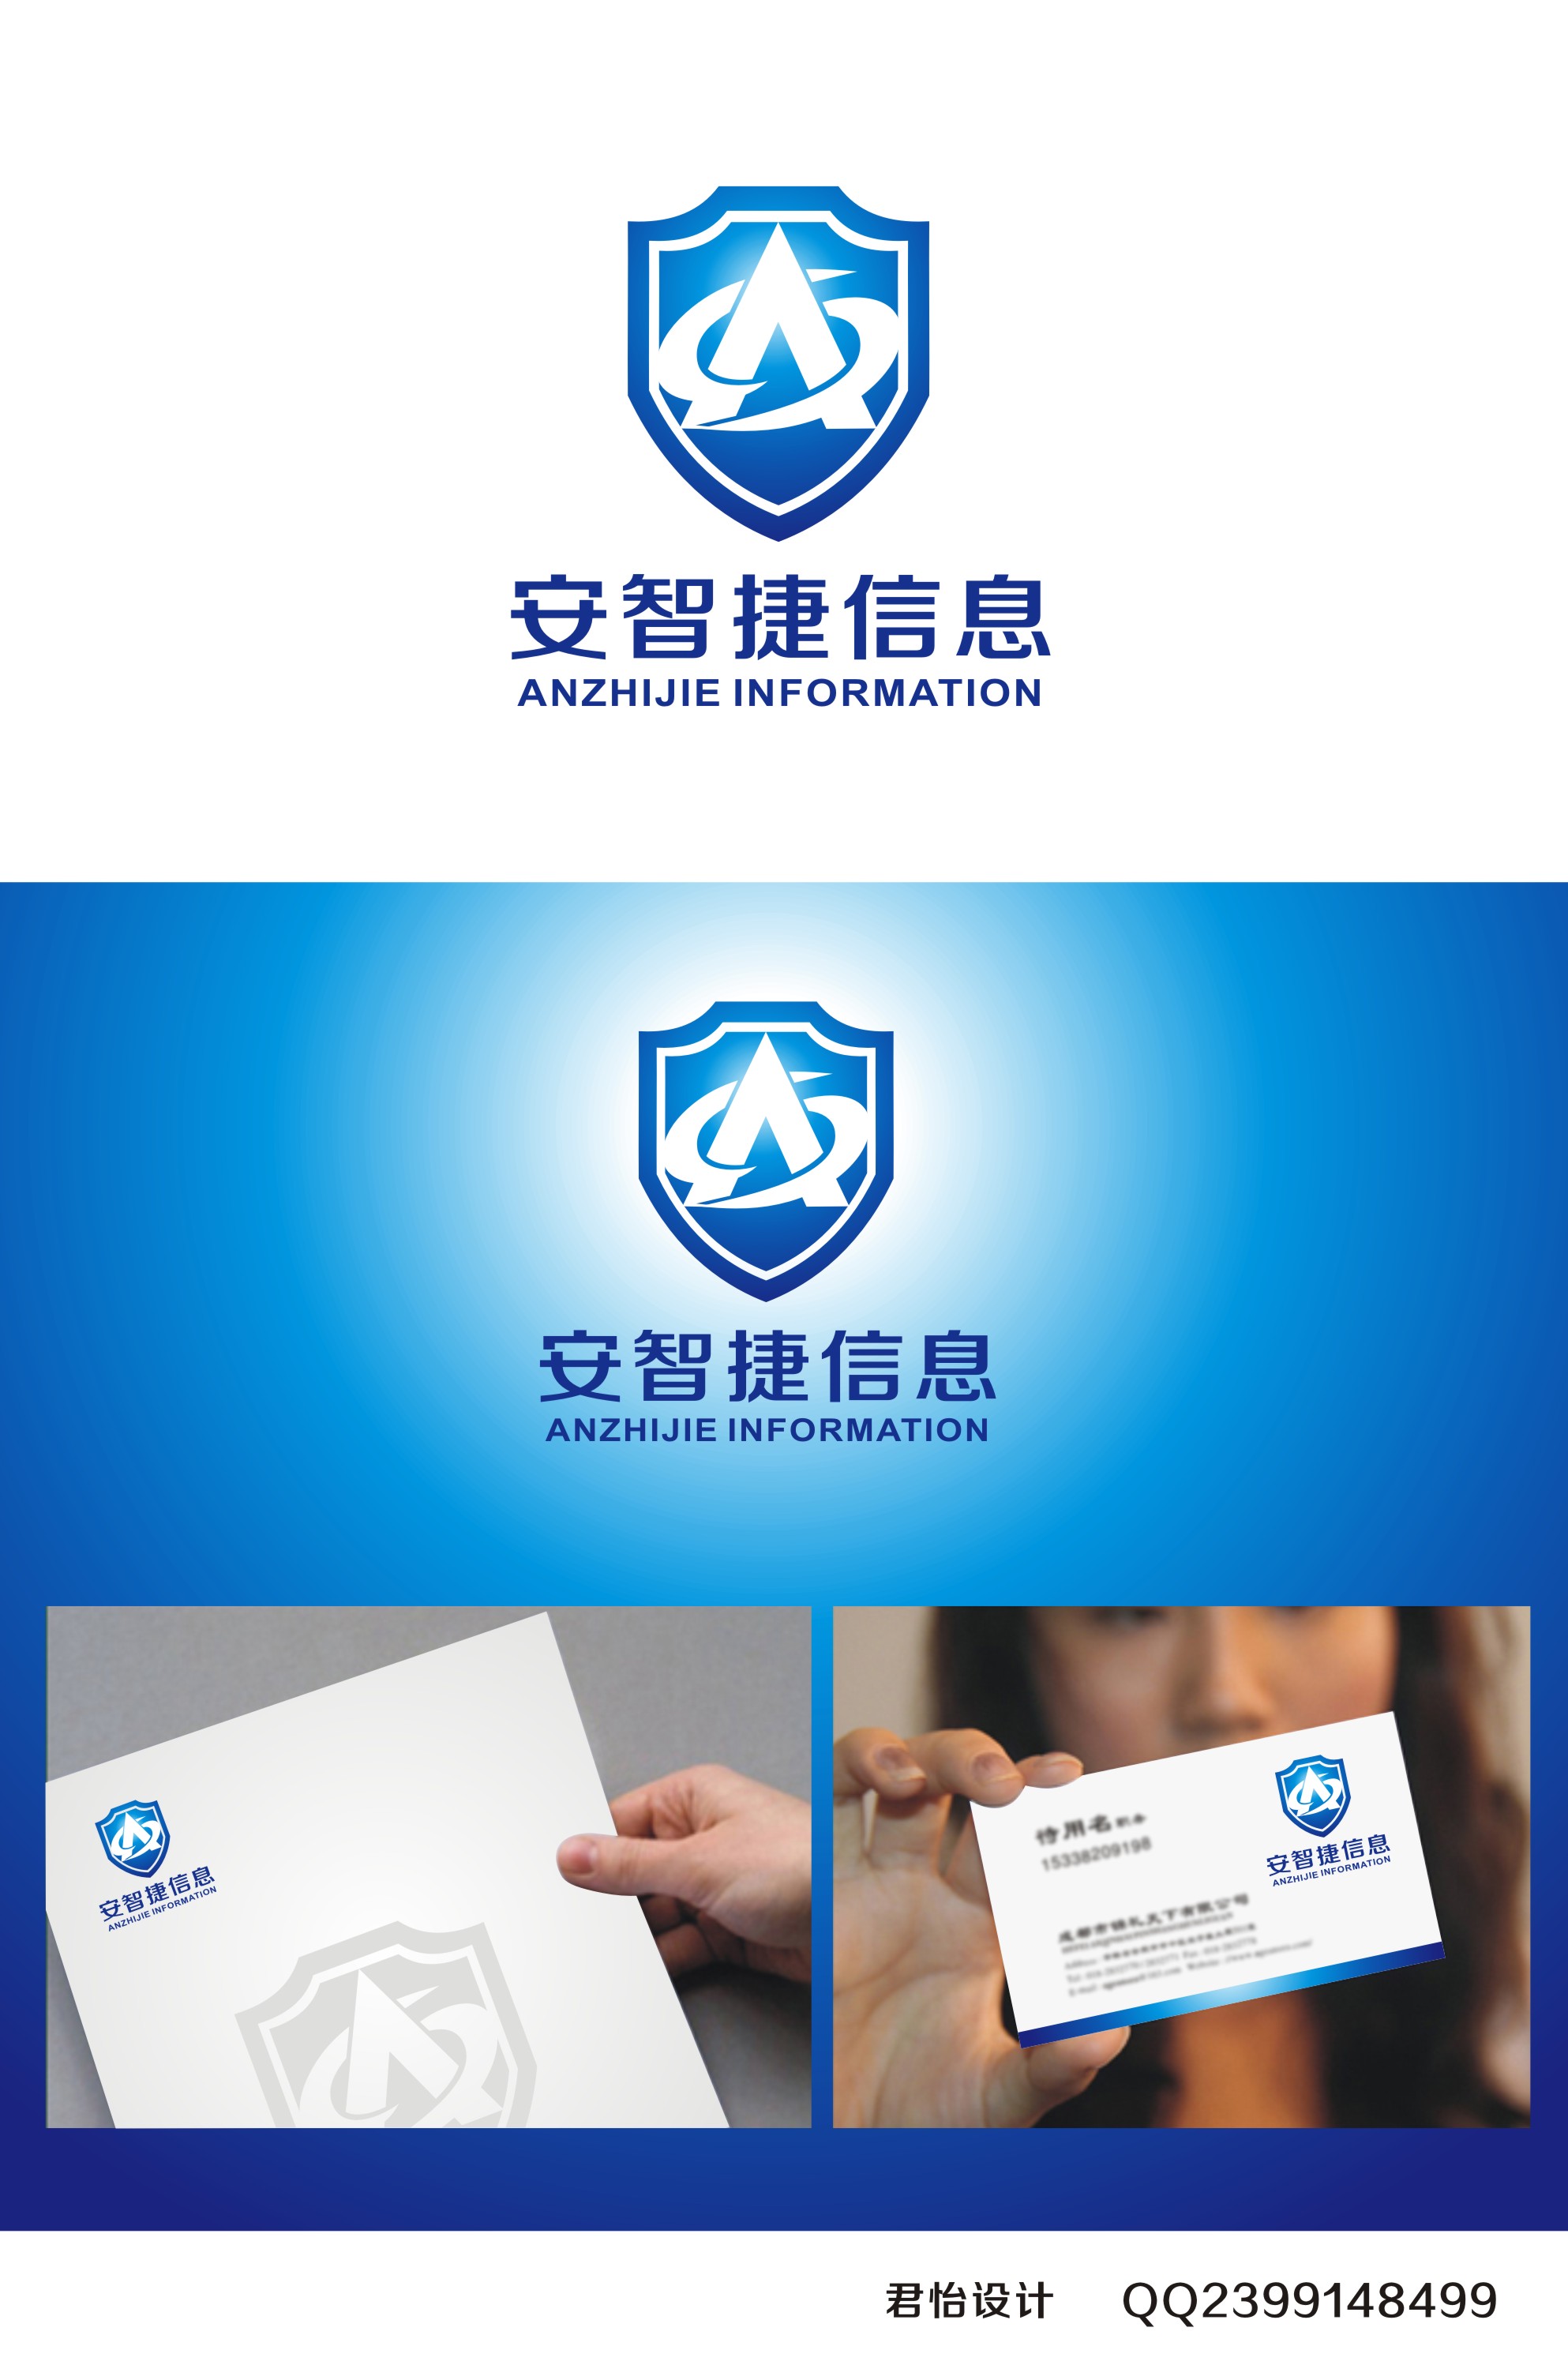 苏州安智捷信息技术有限公司logo设计_420元